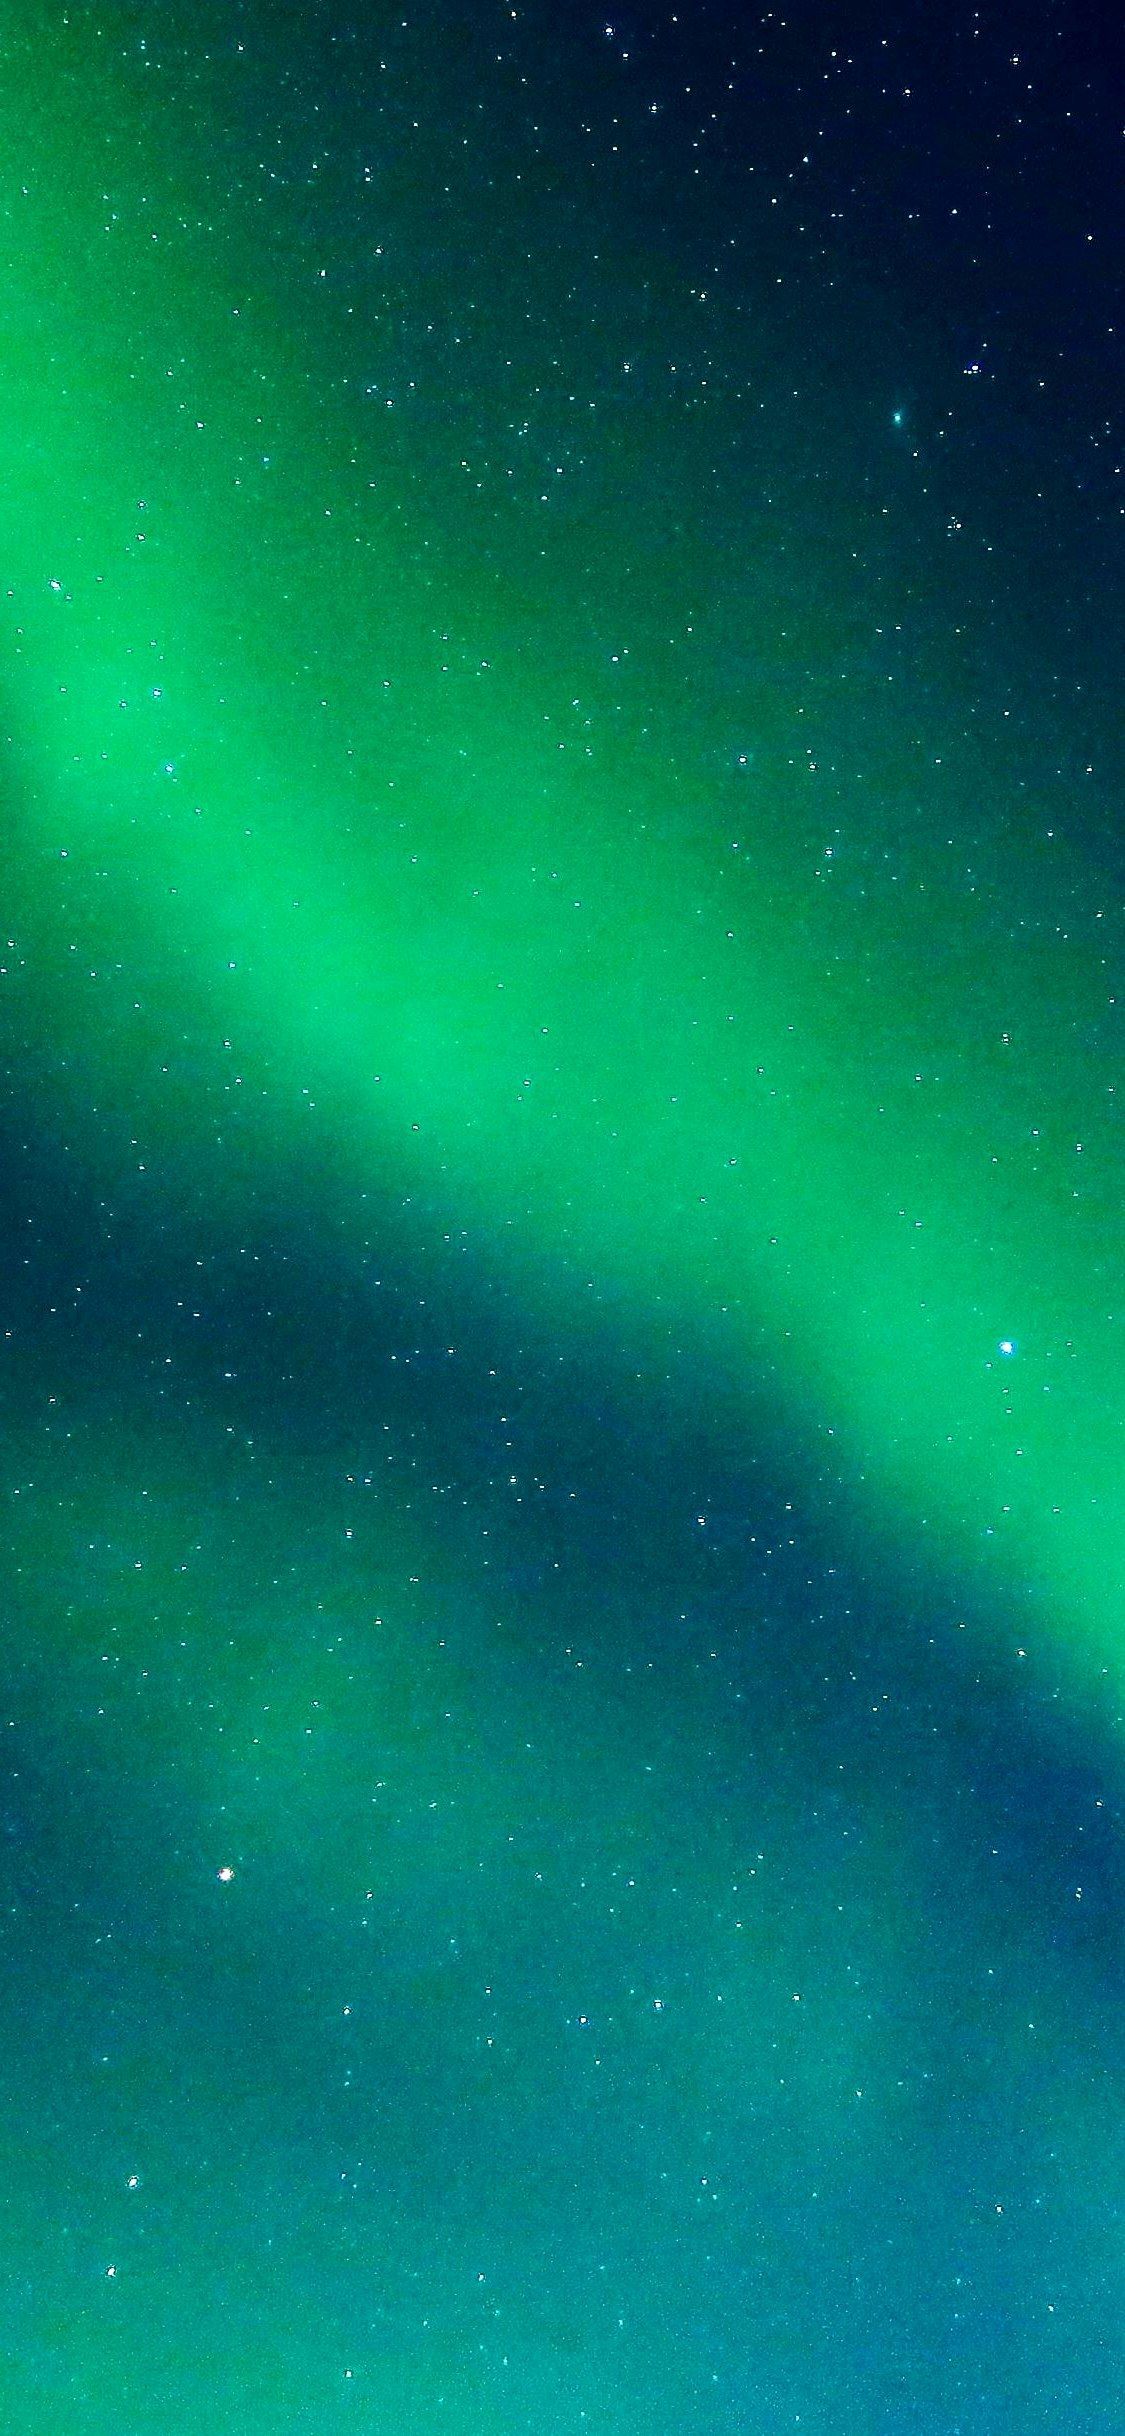 starry sky shine glitter green wallpaper iPhone X Wallpaper. Green wallpaper, iPhone wallpaper, iPhone wallpaper tumblr aesthetic